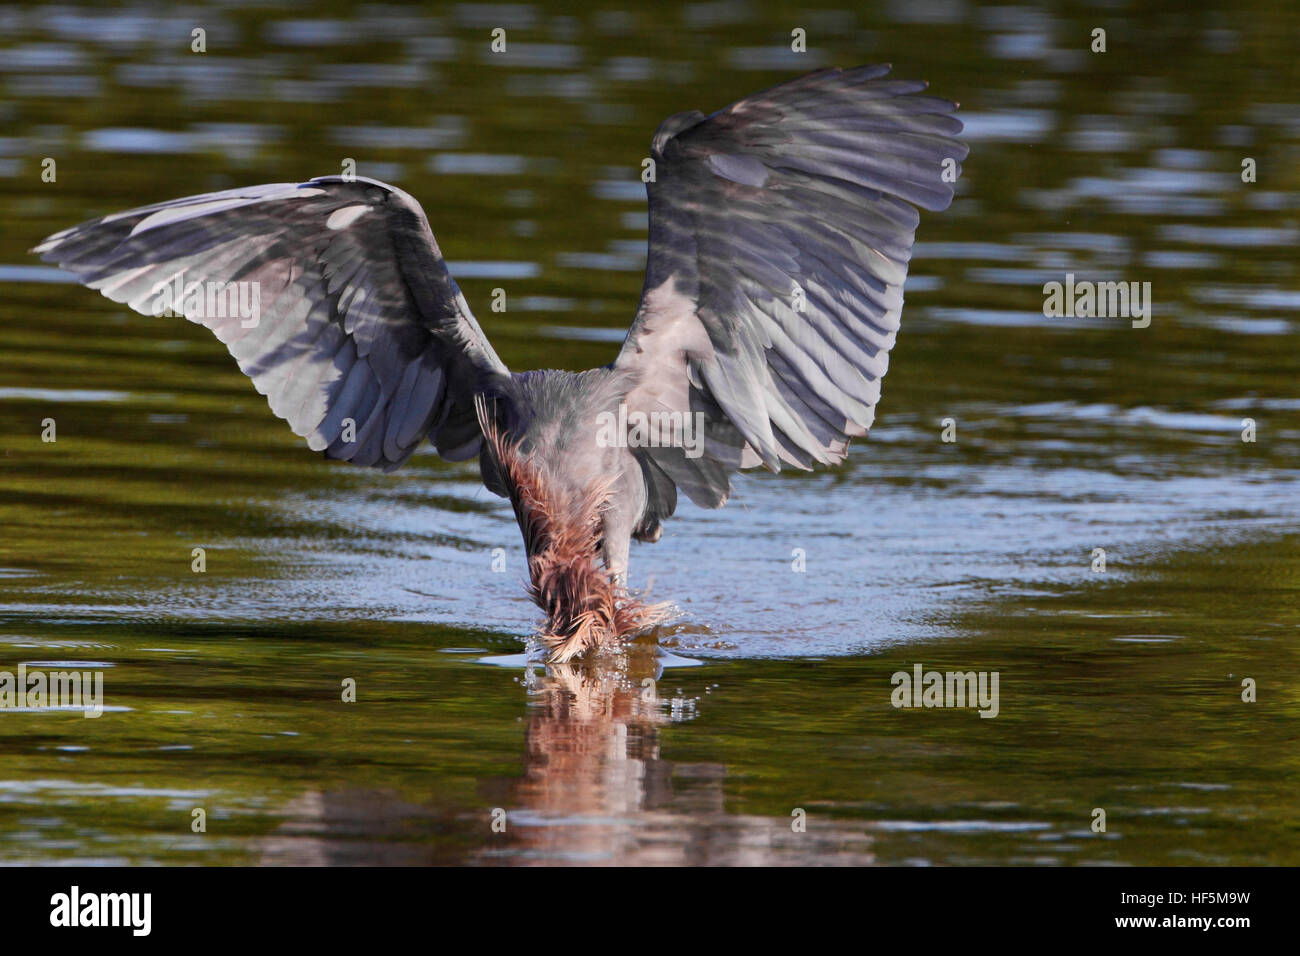 Aigrette garzette (Egretta rufescens rougeâtre) avec ailes déployées la pêche dans les eaux peu profondes, Ding Darling NWR, Florida, USA Banque D'Images